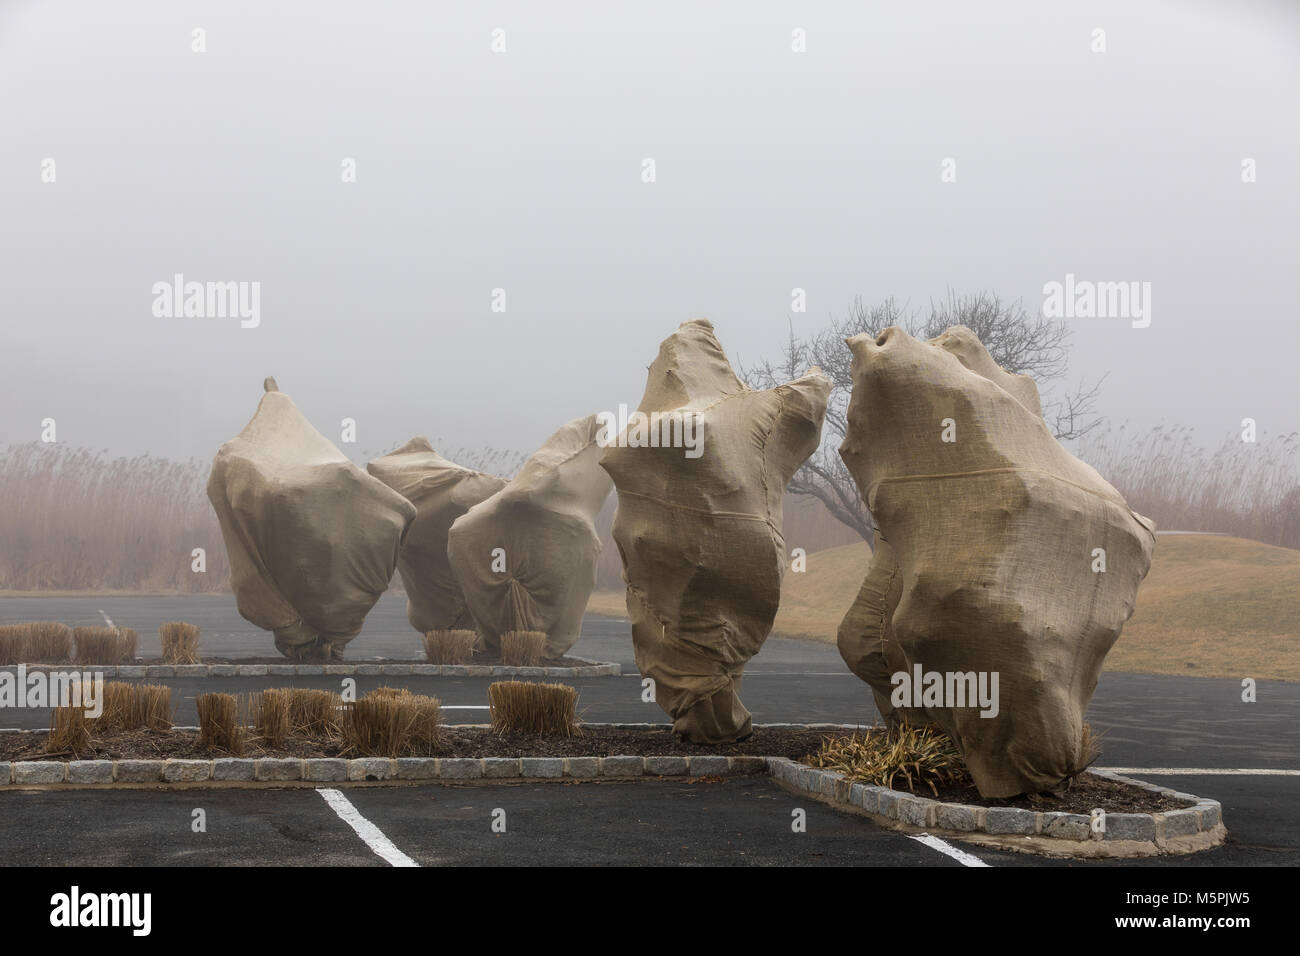 Arbres couverts de jute en un jour brumeux à bridgehampton, ny Banque D'Images